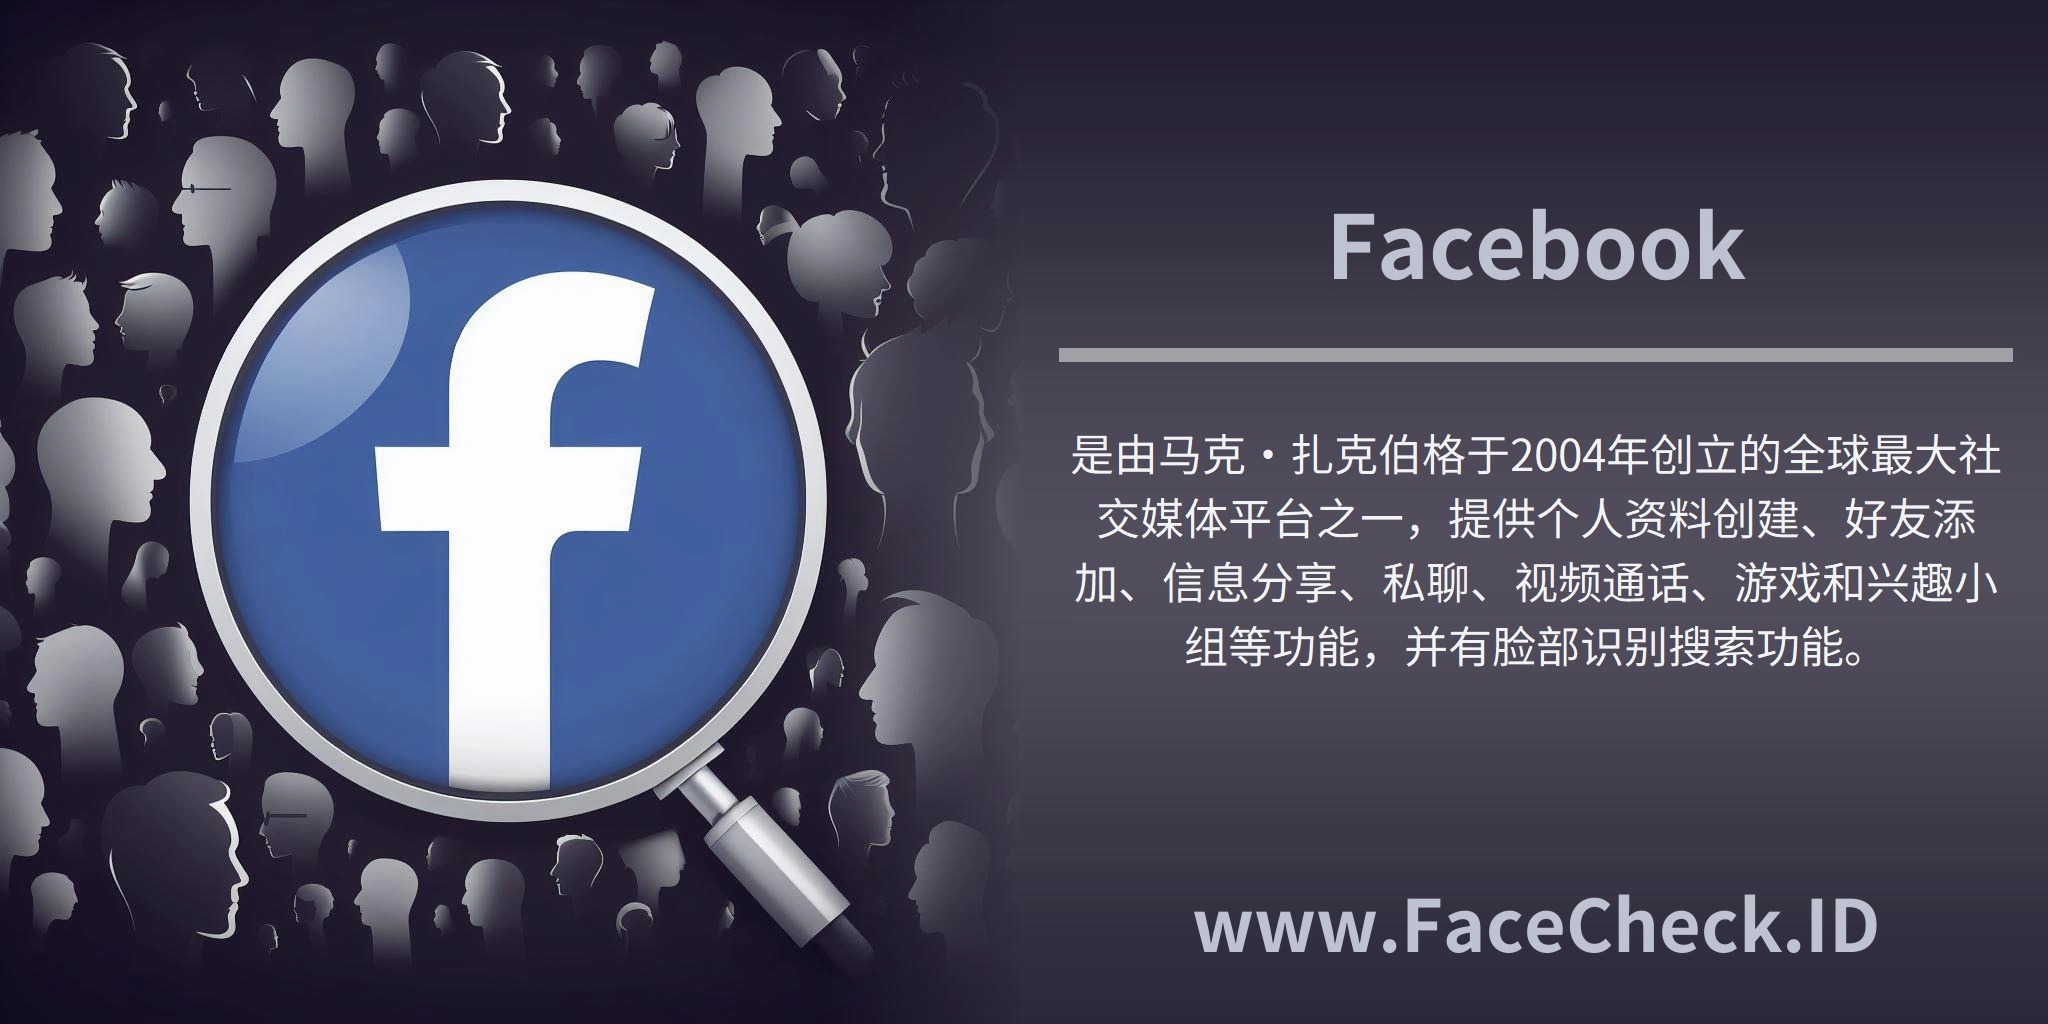 <b>Facebook</b>是由马克·扎克伯格于2004年创立的全球最大社交媒体平台之一，提供个人资料创建、好友添加、信息分享、私聊、视频通话、游戏和兴趣小组等功能，并有脸部识别搜索功能。